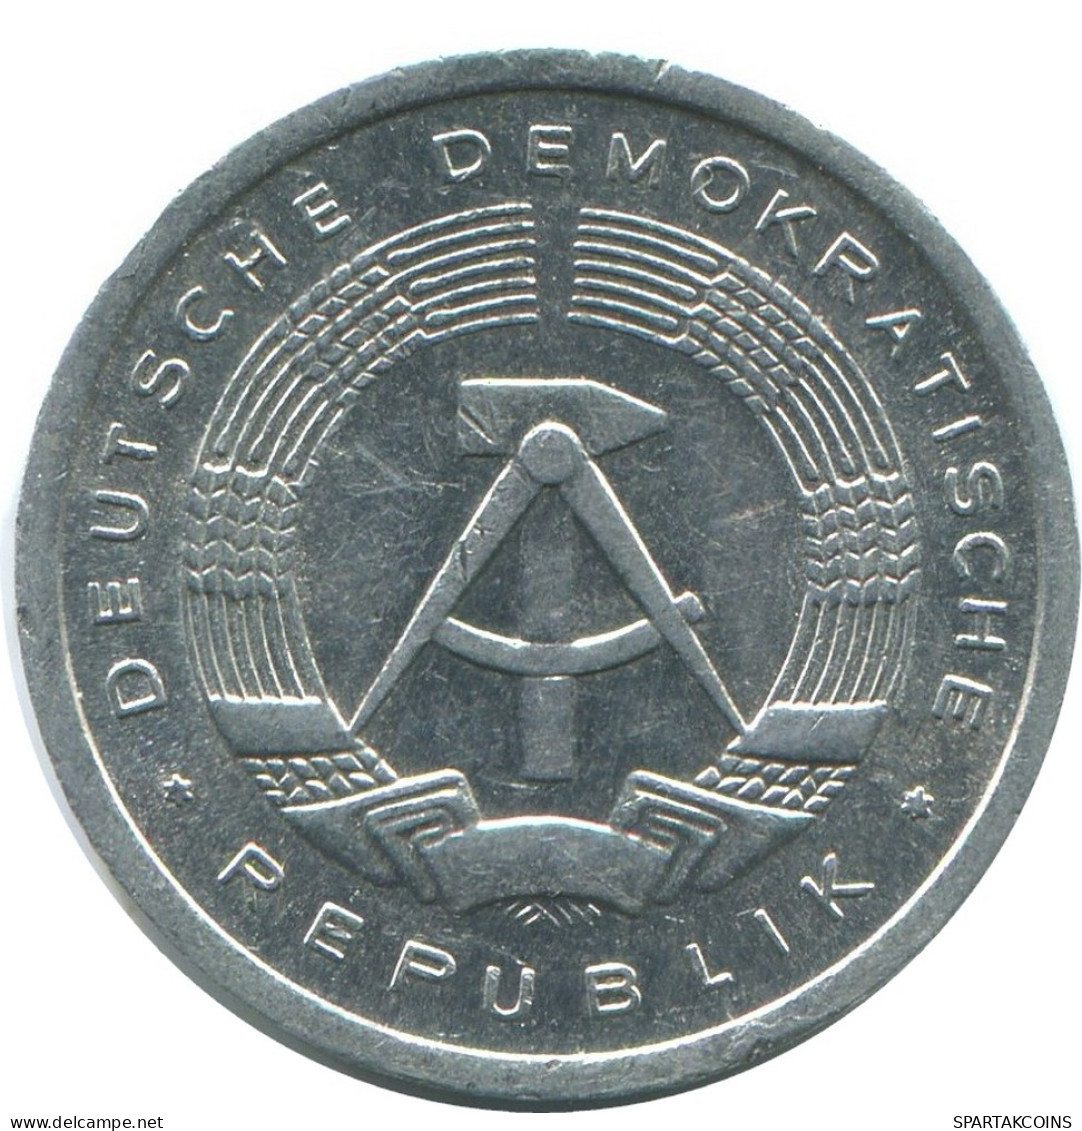 1 PFENNIG 1984 A DDR EAST GERMANY Coin #AE043.U - 1 Pfennig